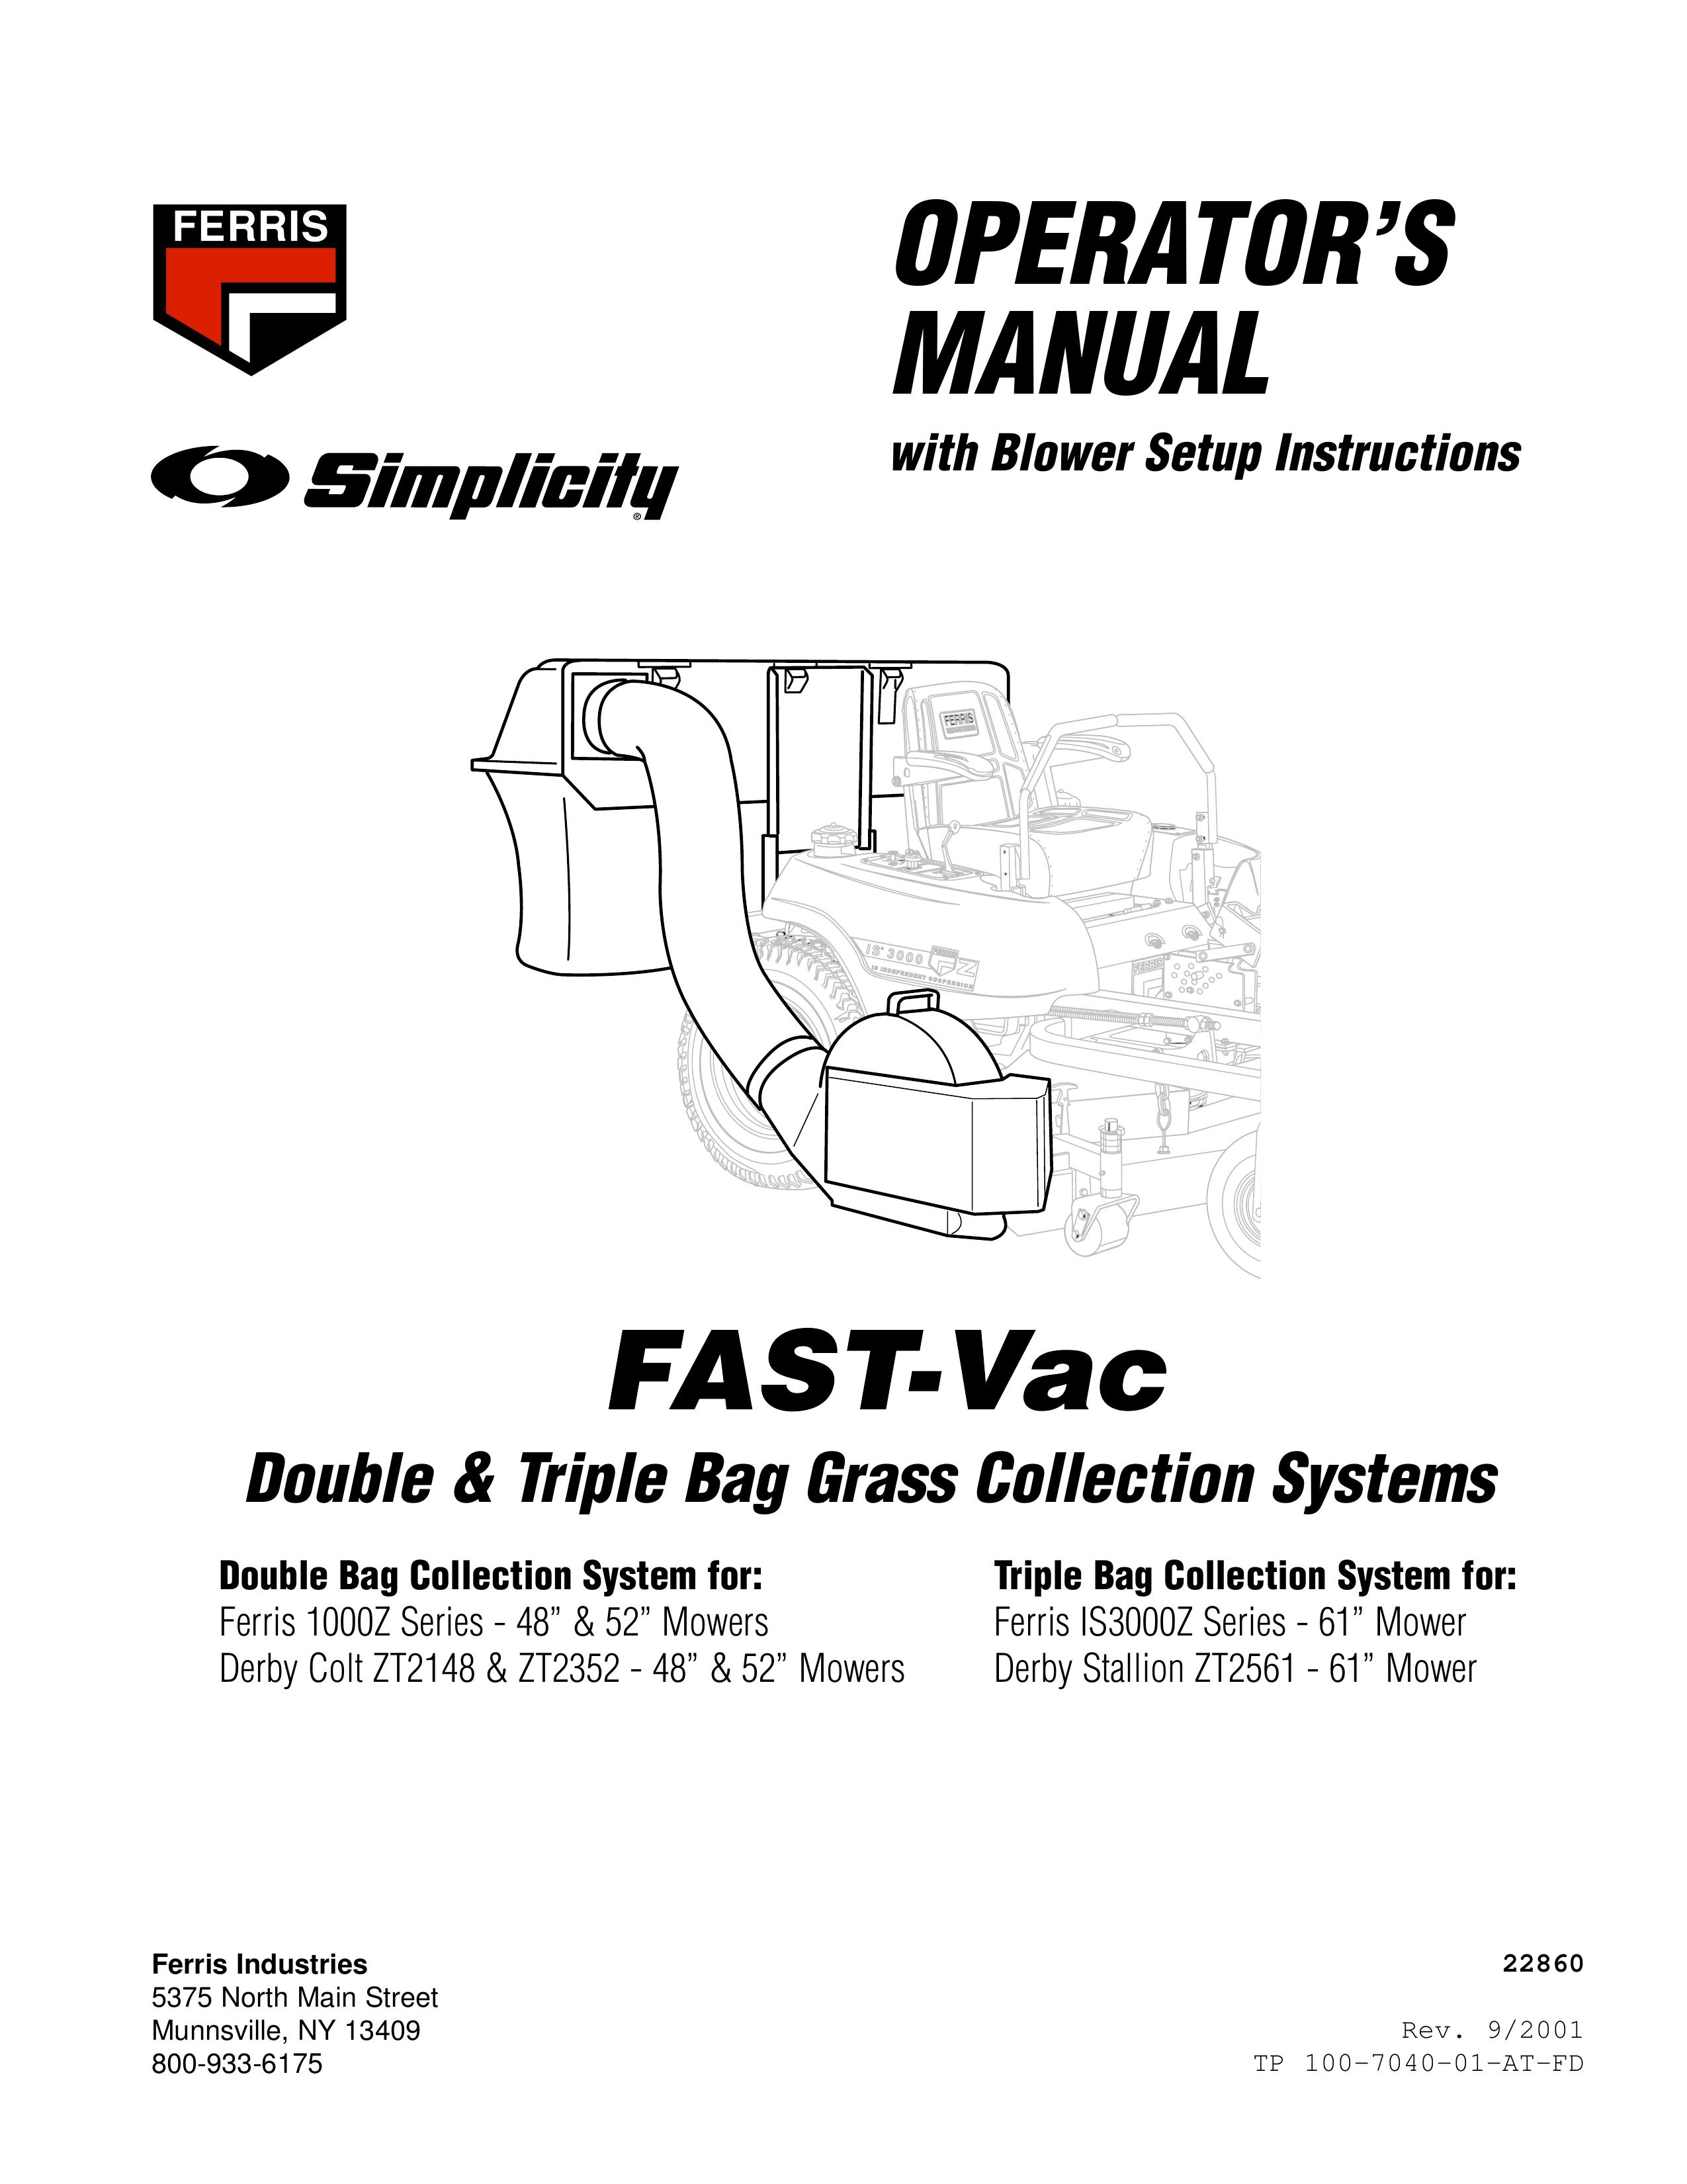 Ferris Industries 1000z Series Lawn Mower User Manual